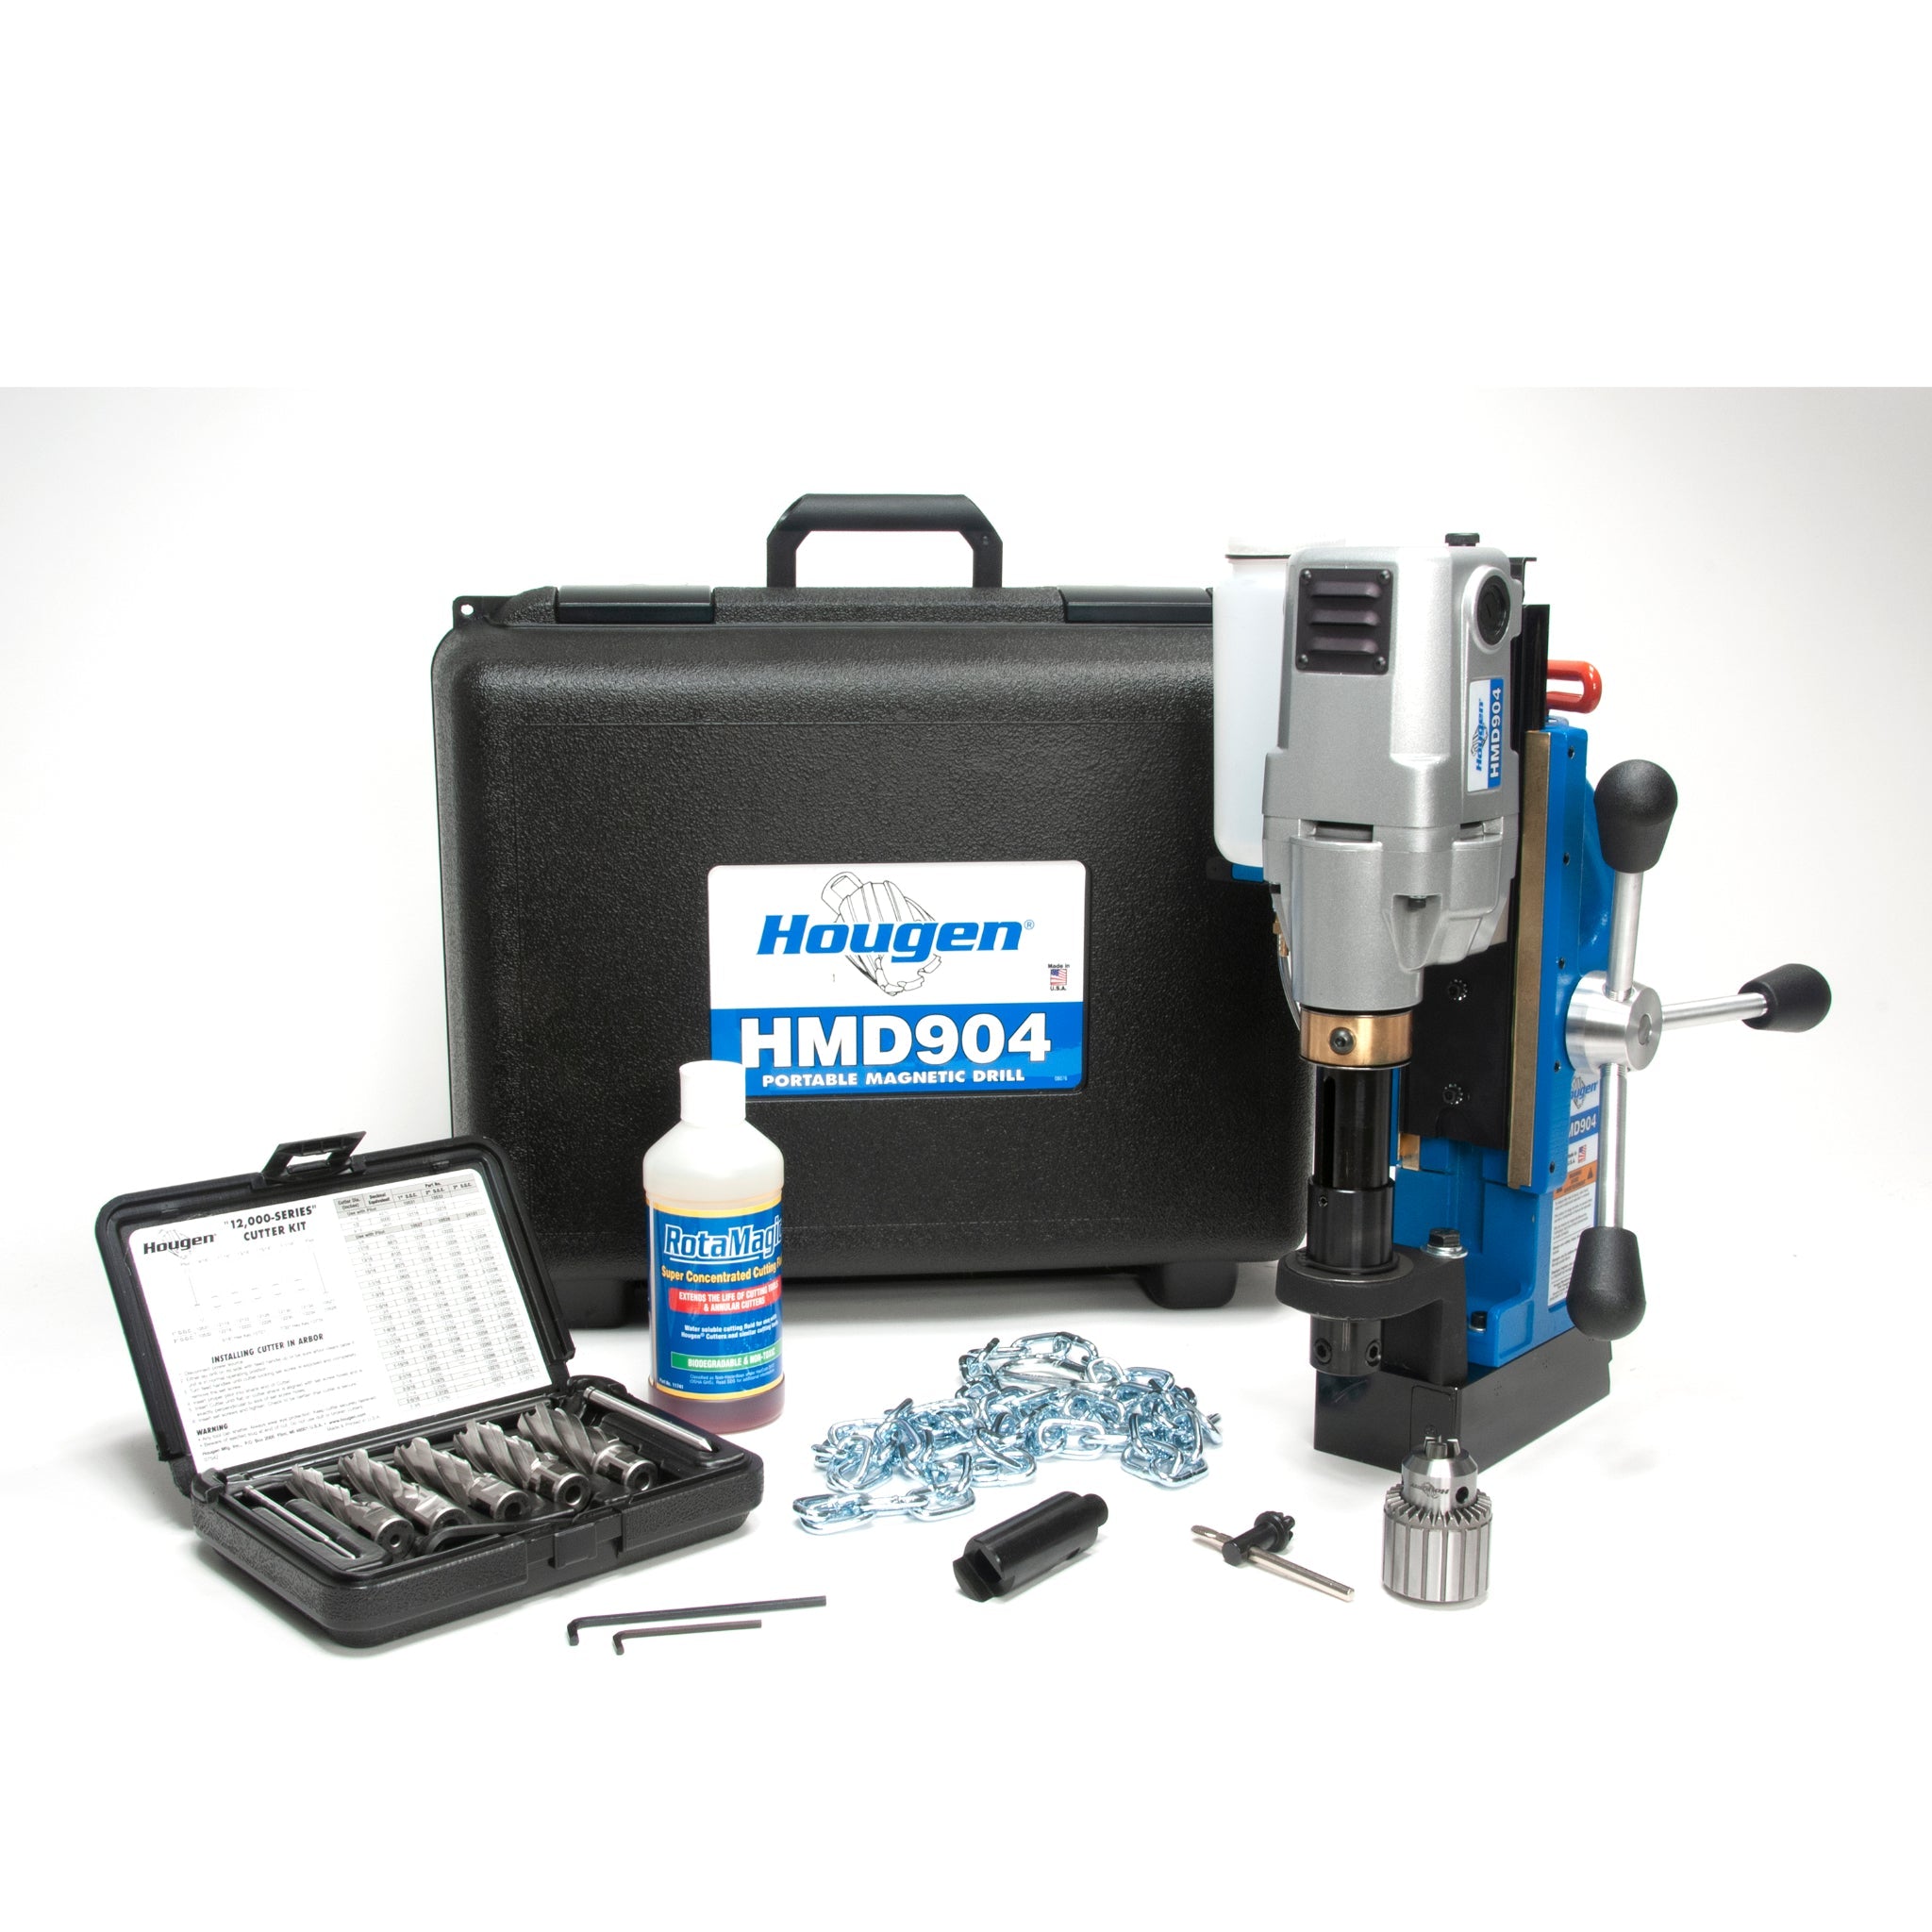 HMD904 Hougen Versatile Mag Drill - 115V - 0904105 - CelticMagDrills.ca